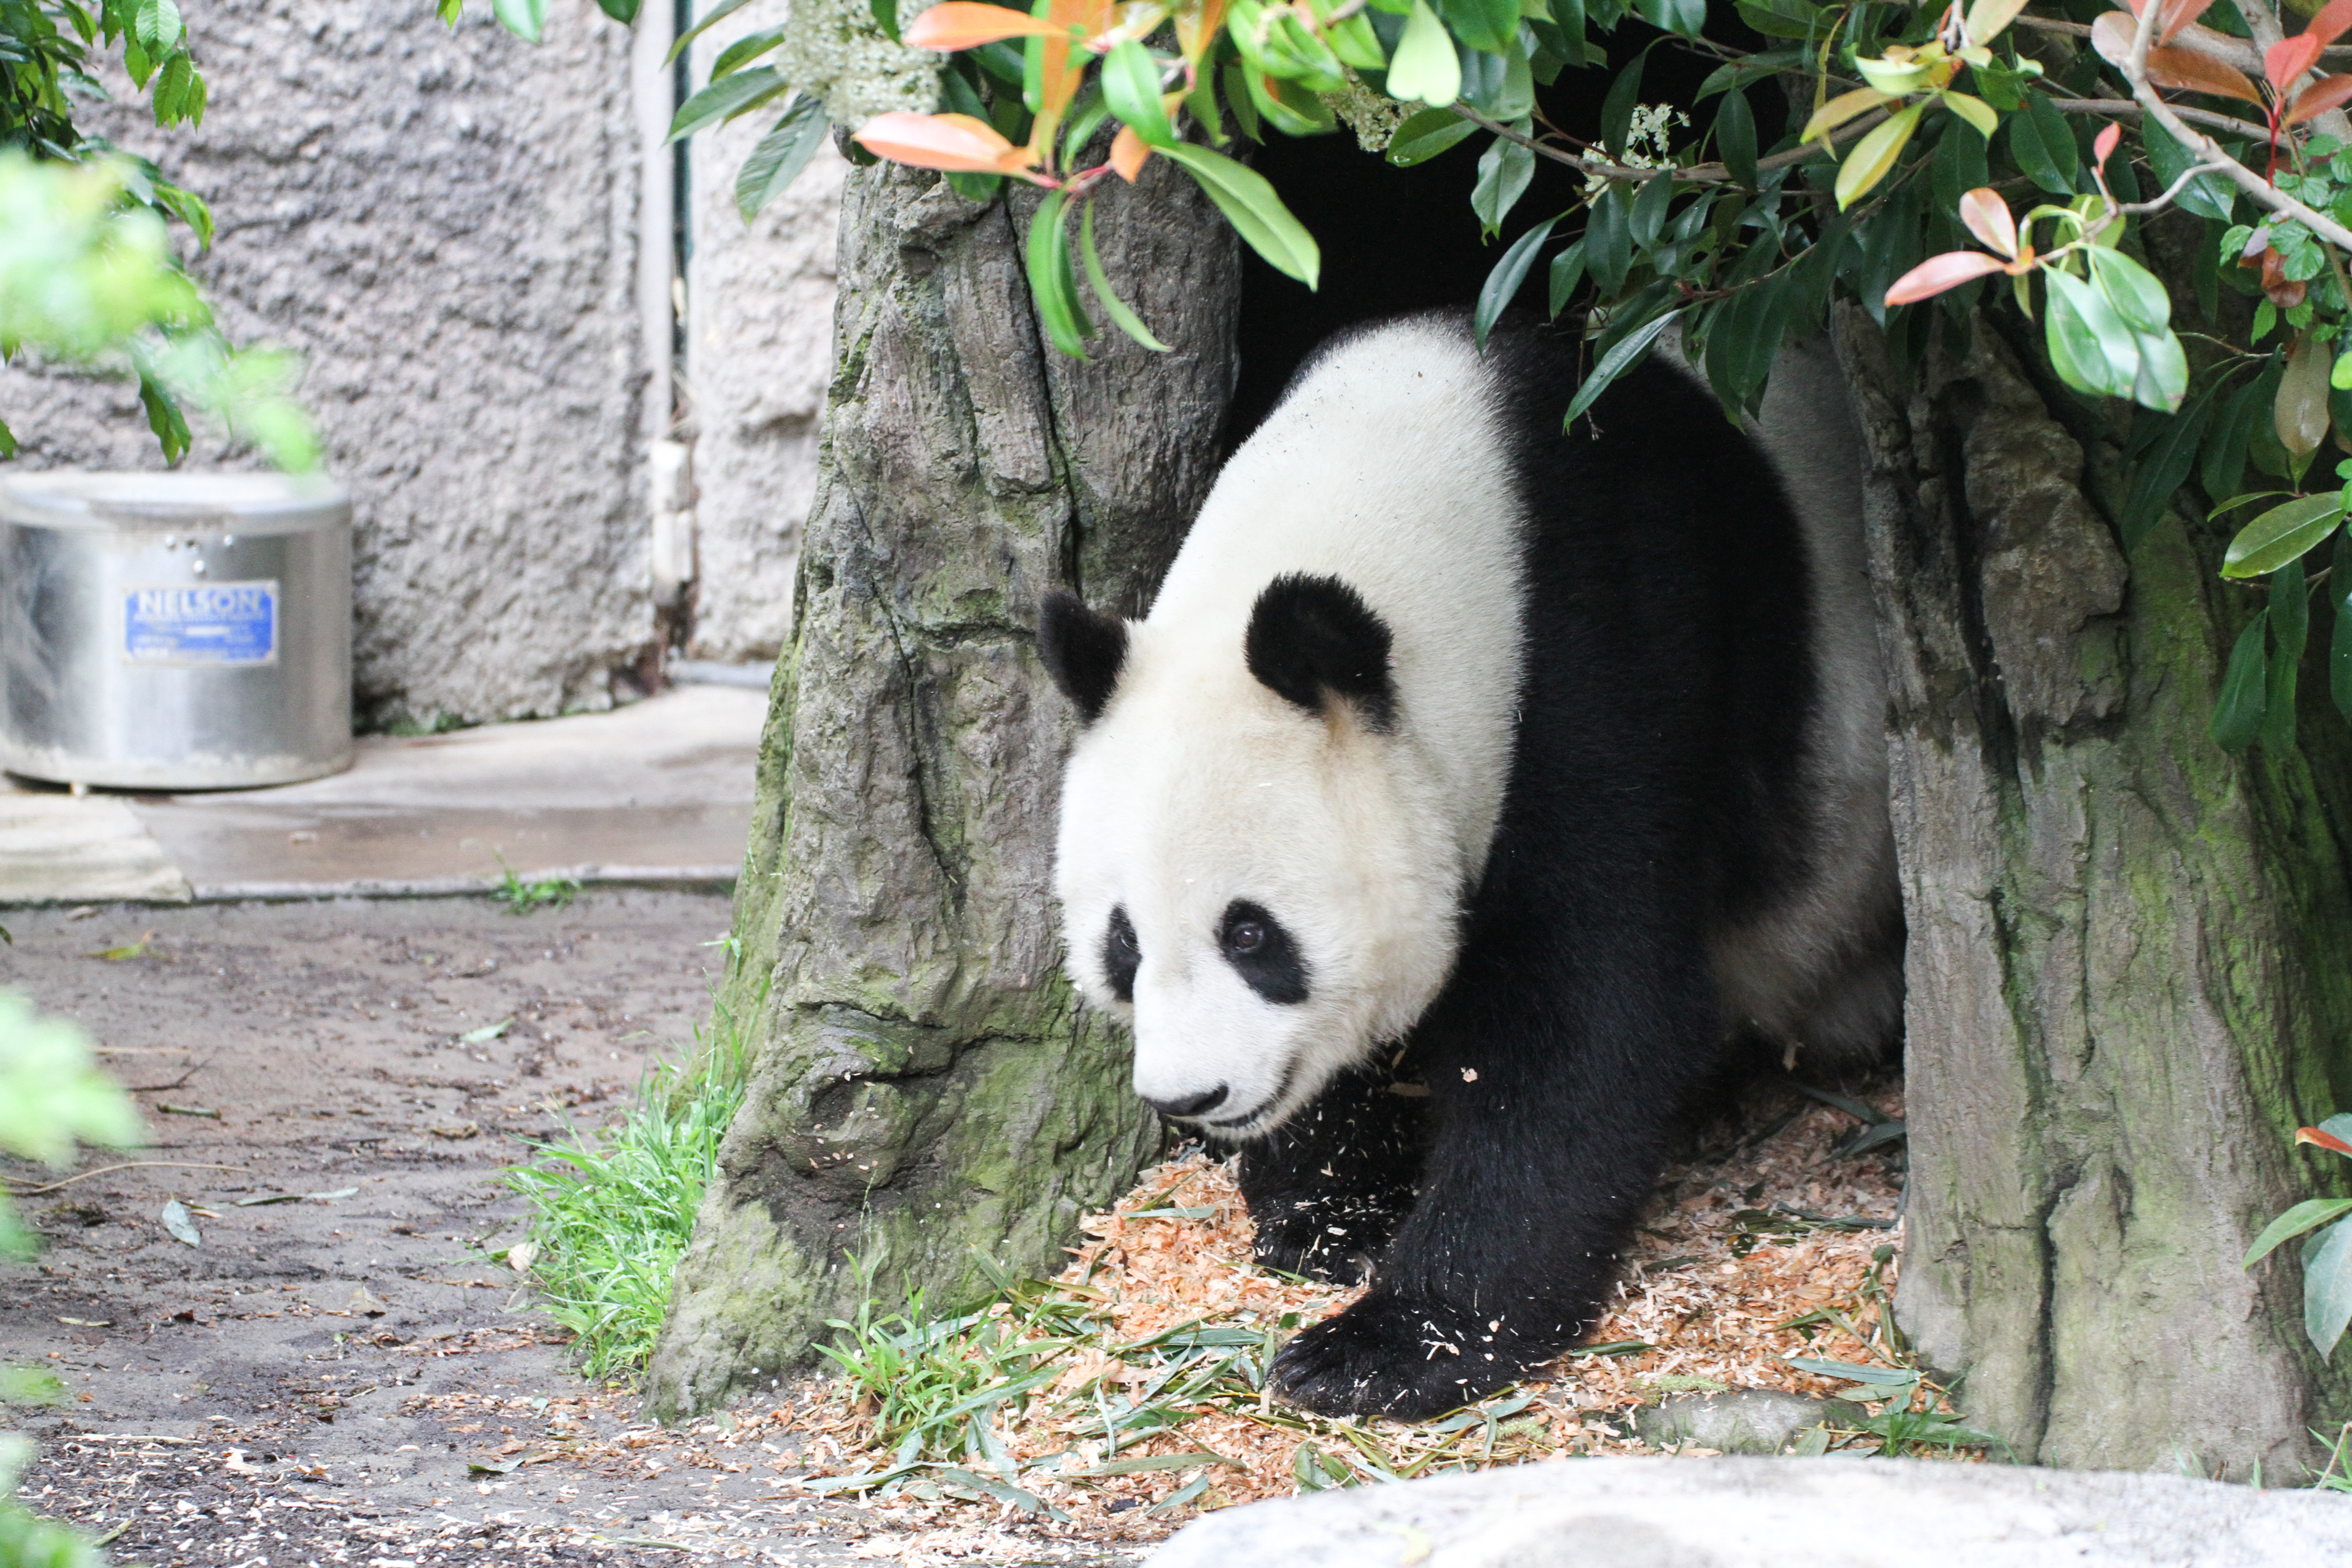 Surprise! Giant pandas may return to San Diego - The San Diego Union-Tribune